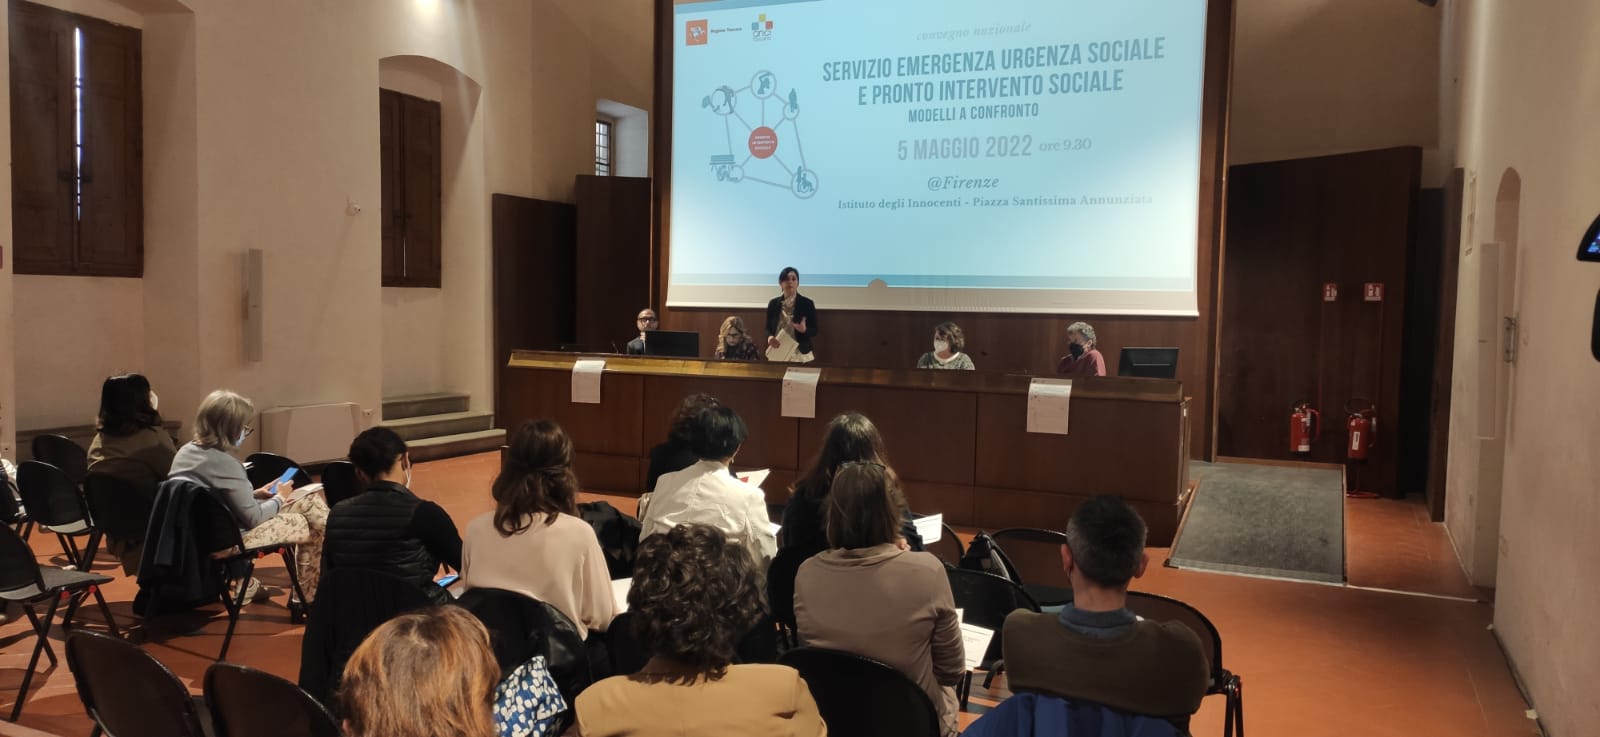 Pronto intervento sociale, in Toscana 1.300 interventi in un anno